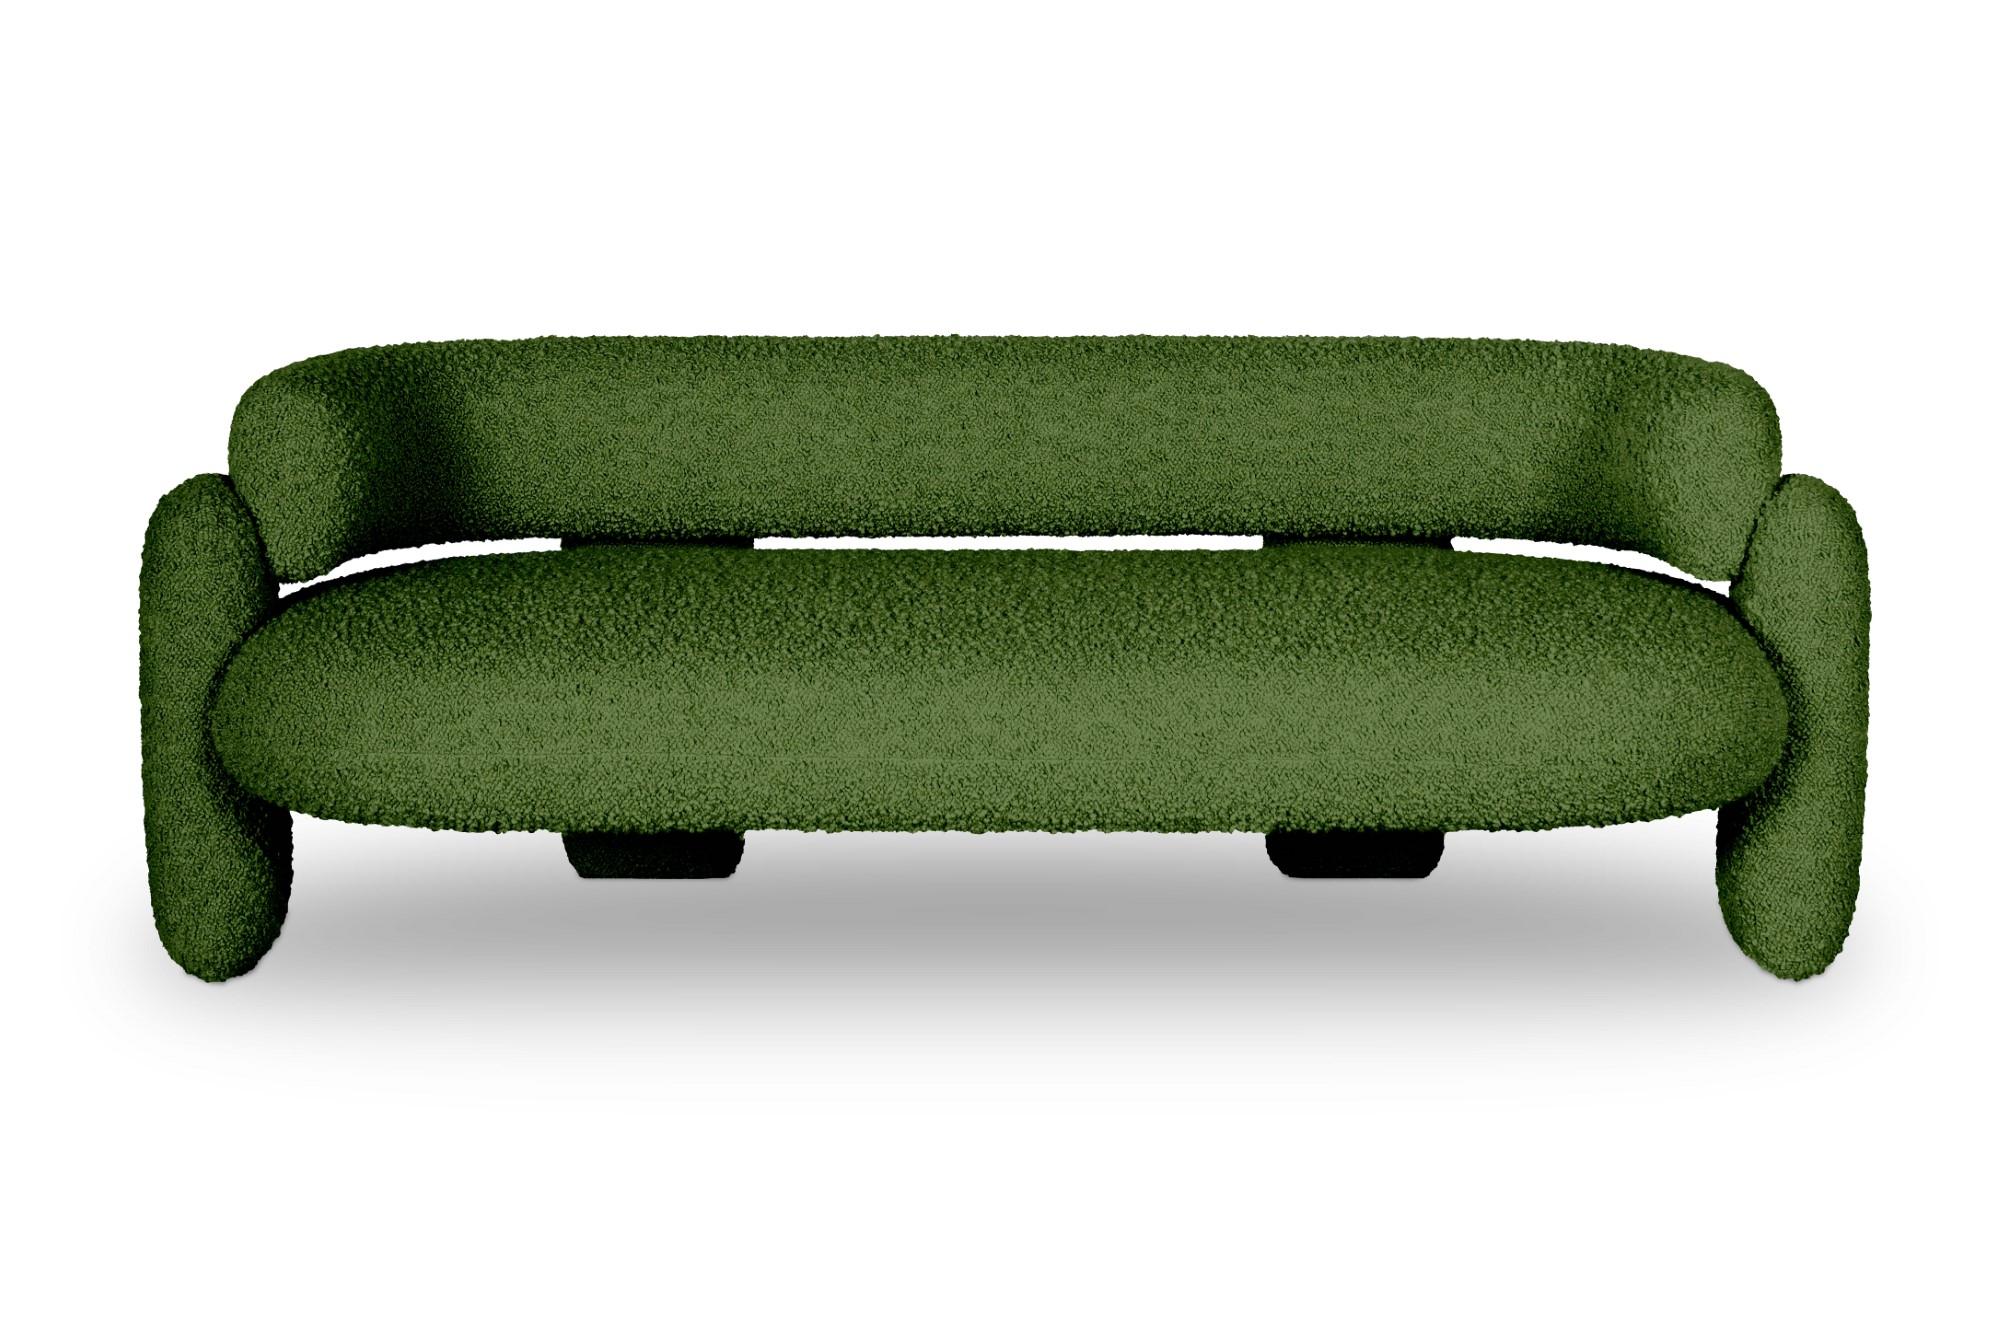 Embrace Cormo-Sofa mit Smaragd von Royal Stranger
Abmessungen: B 200 x H 70 x T 90 cm. Sitzhöhe 47 cm.
MATERIAL: Massivholzrahmen, Schaumstoff, Polsterung.
Erhältlich in anderen Stoffen von Royal Stranger und in COM. Bitte kontaktieren Sie